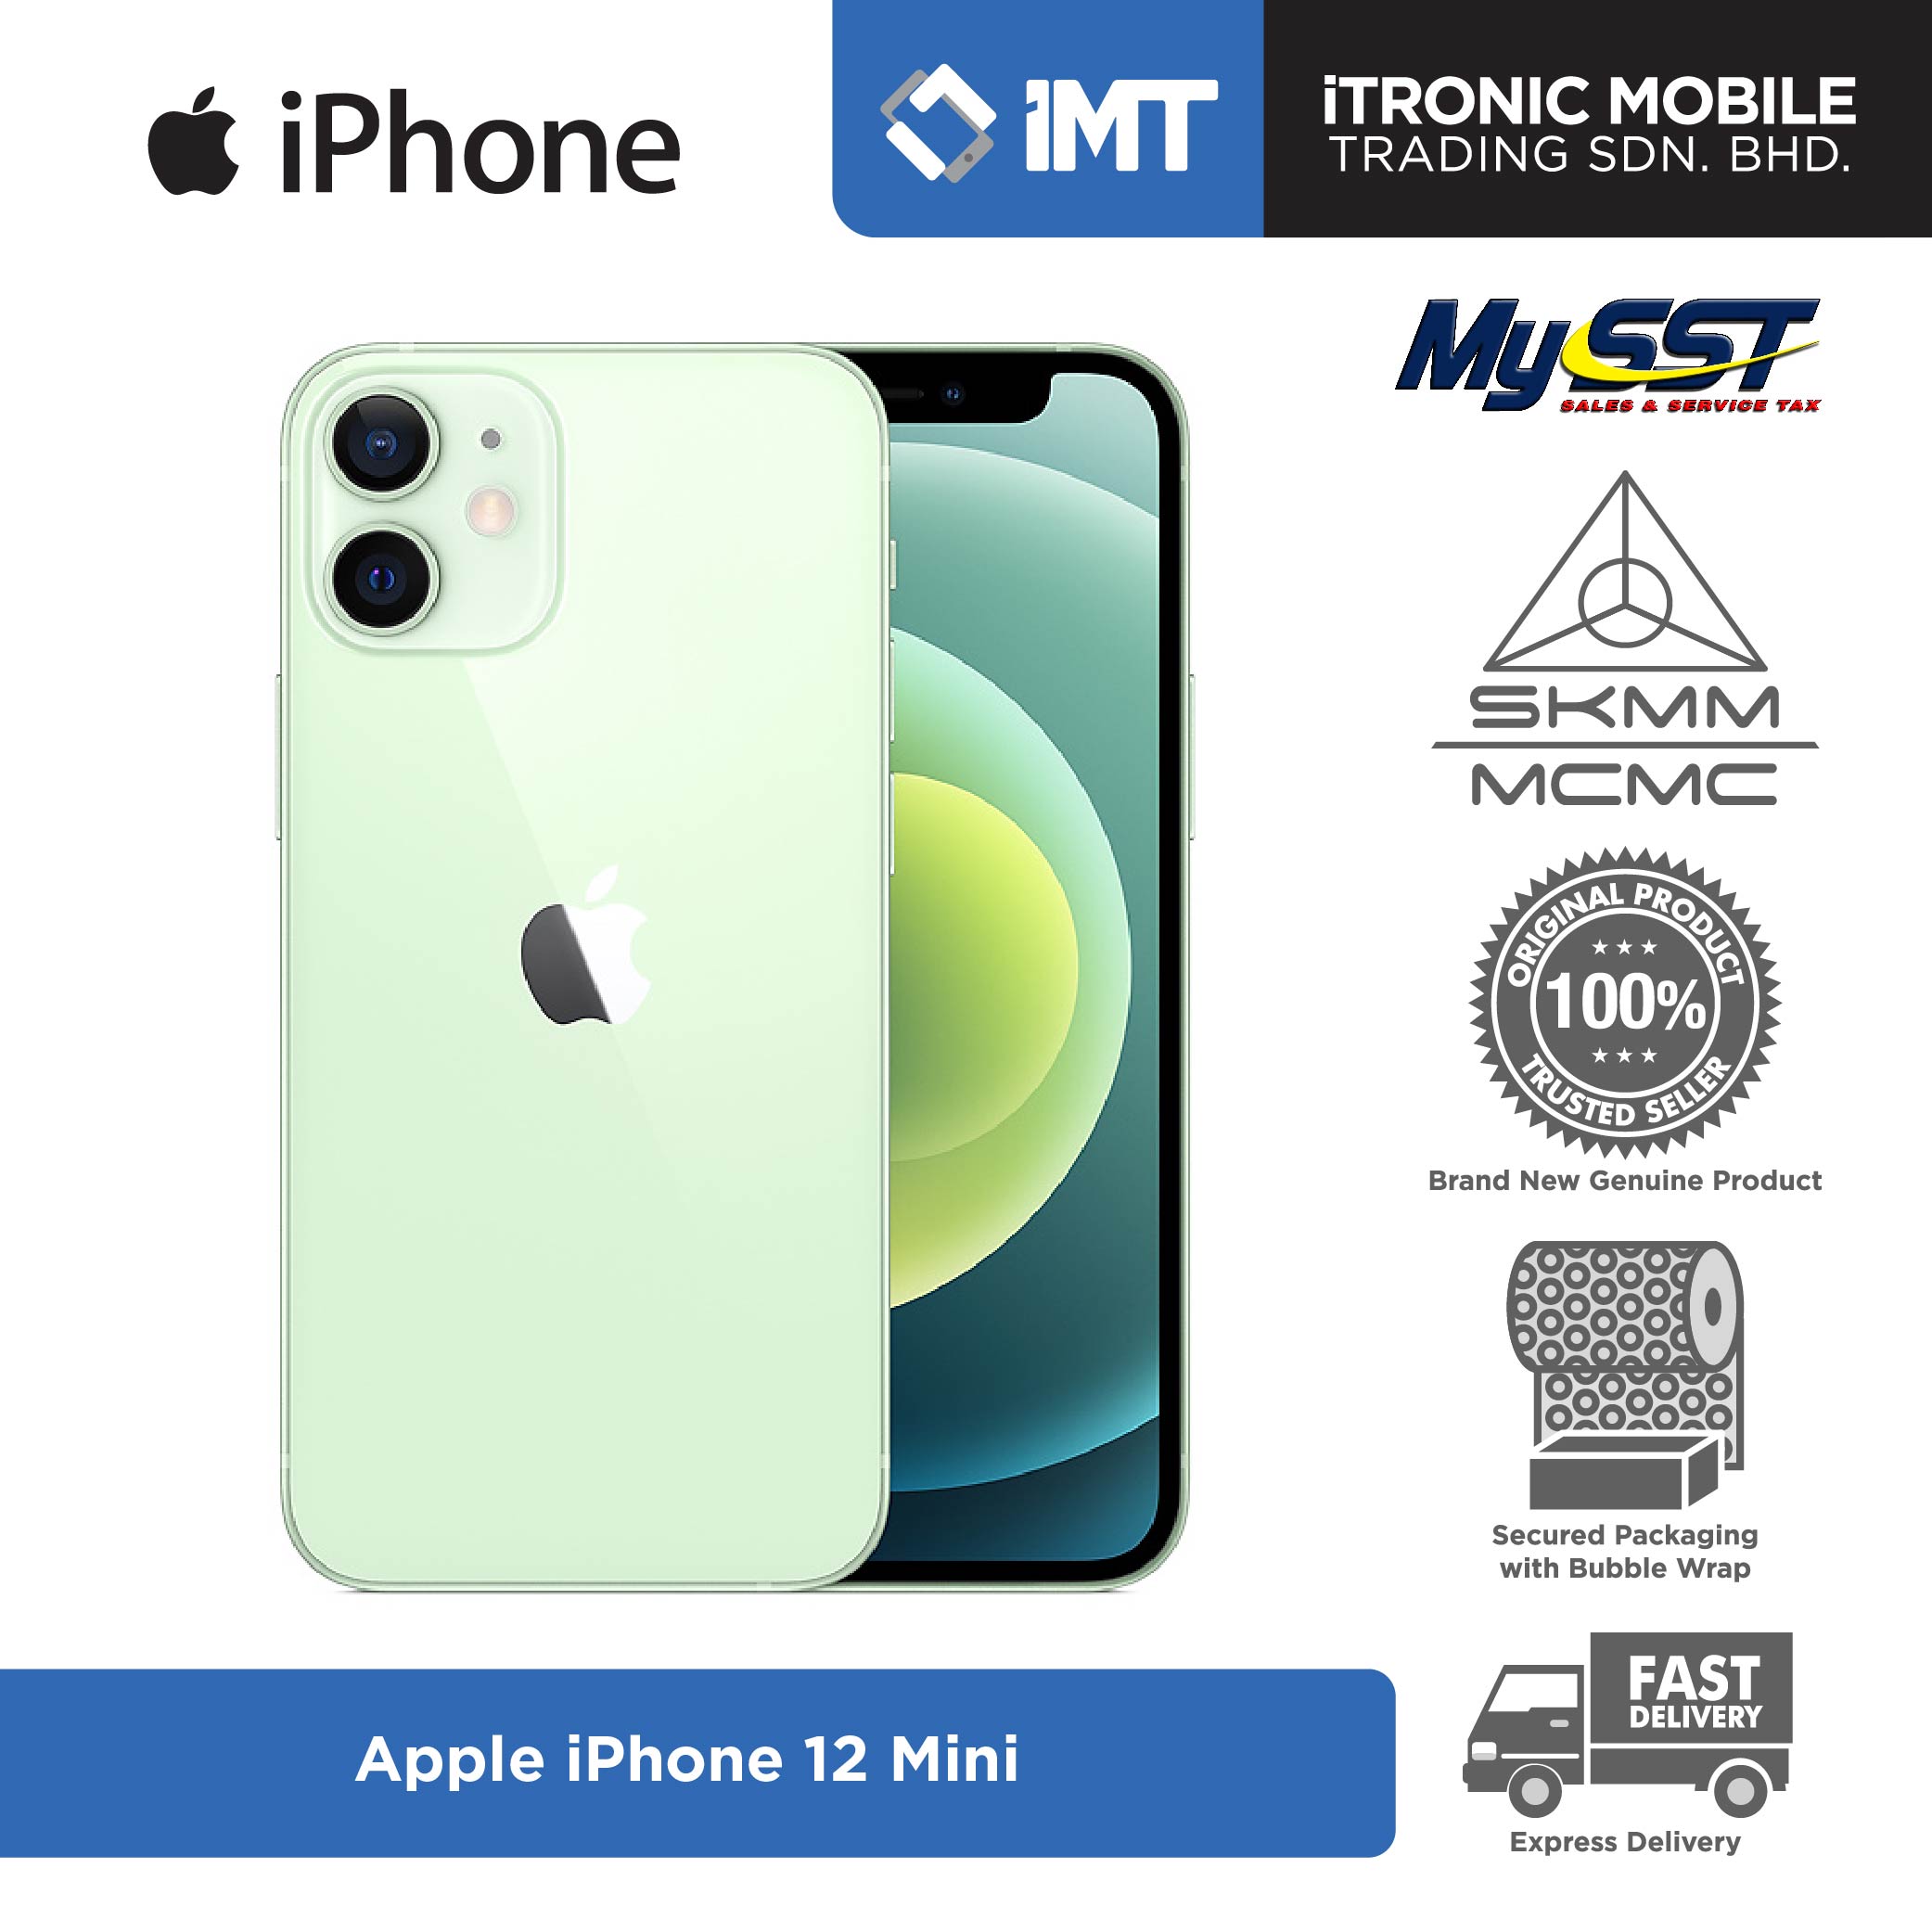 Iphone 12 price in malaysia